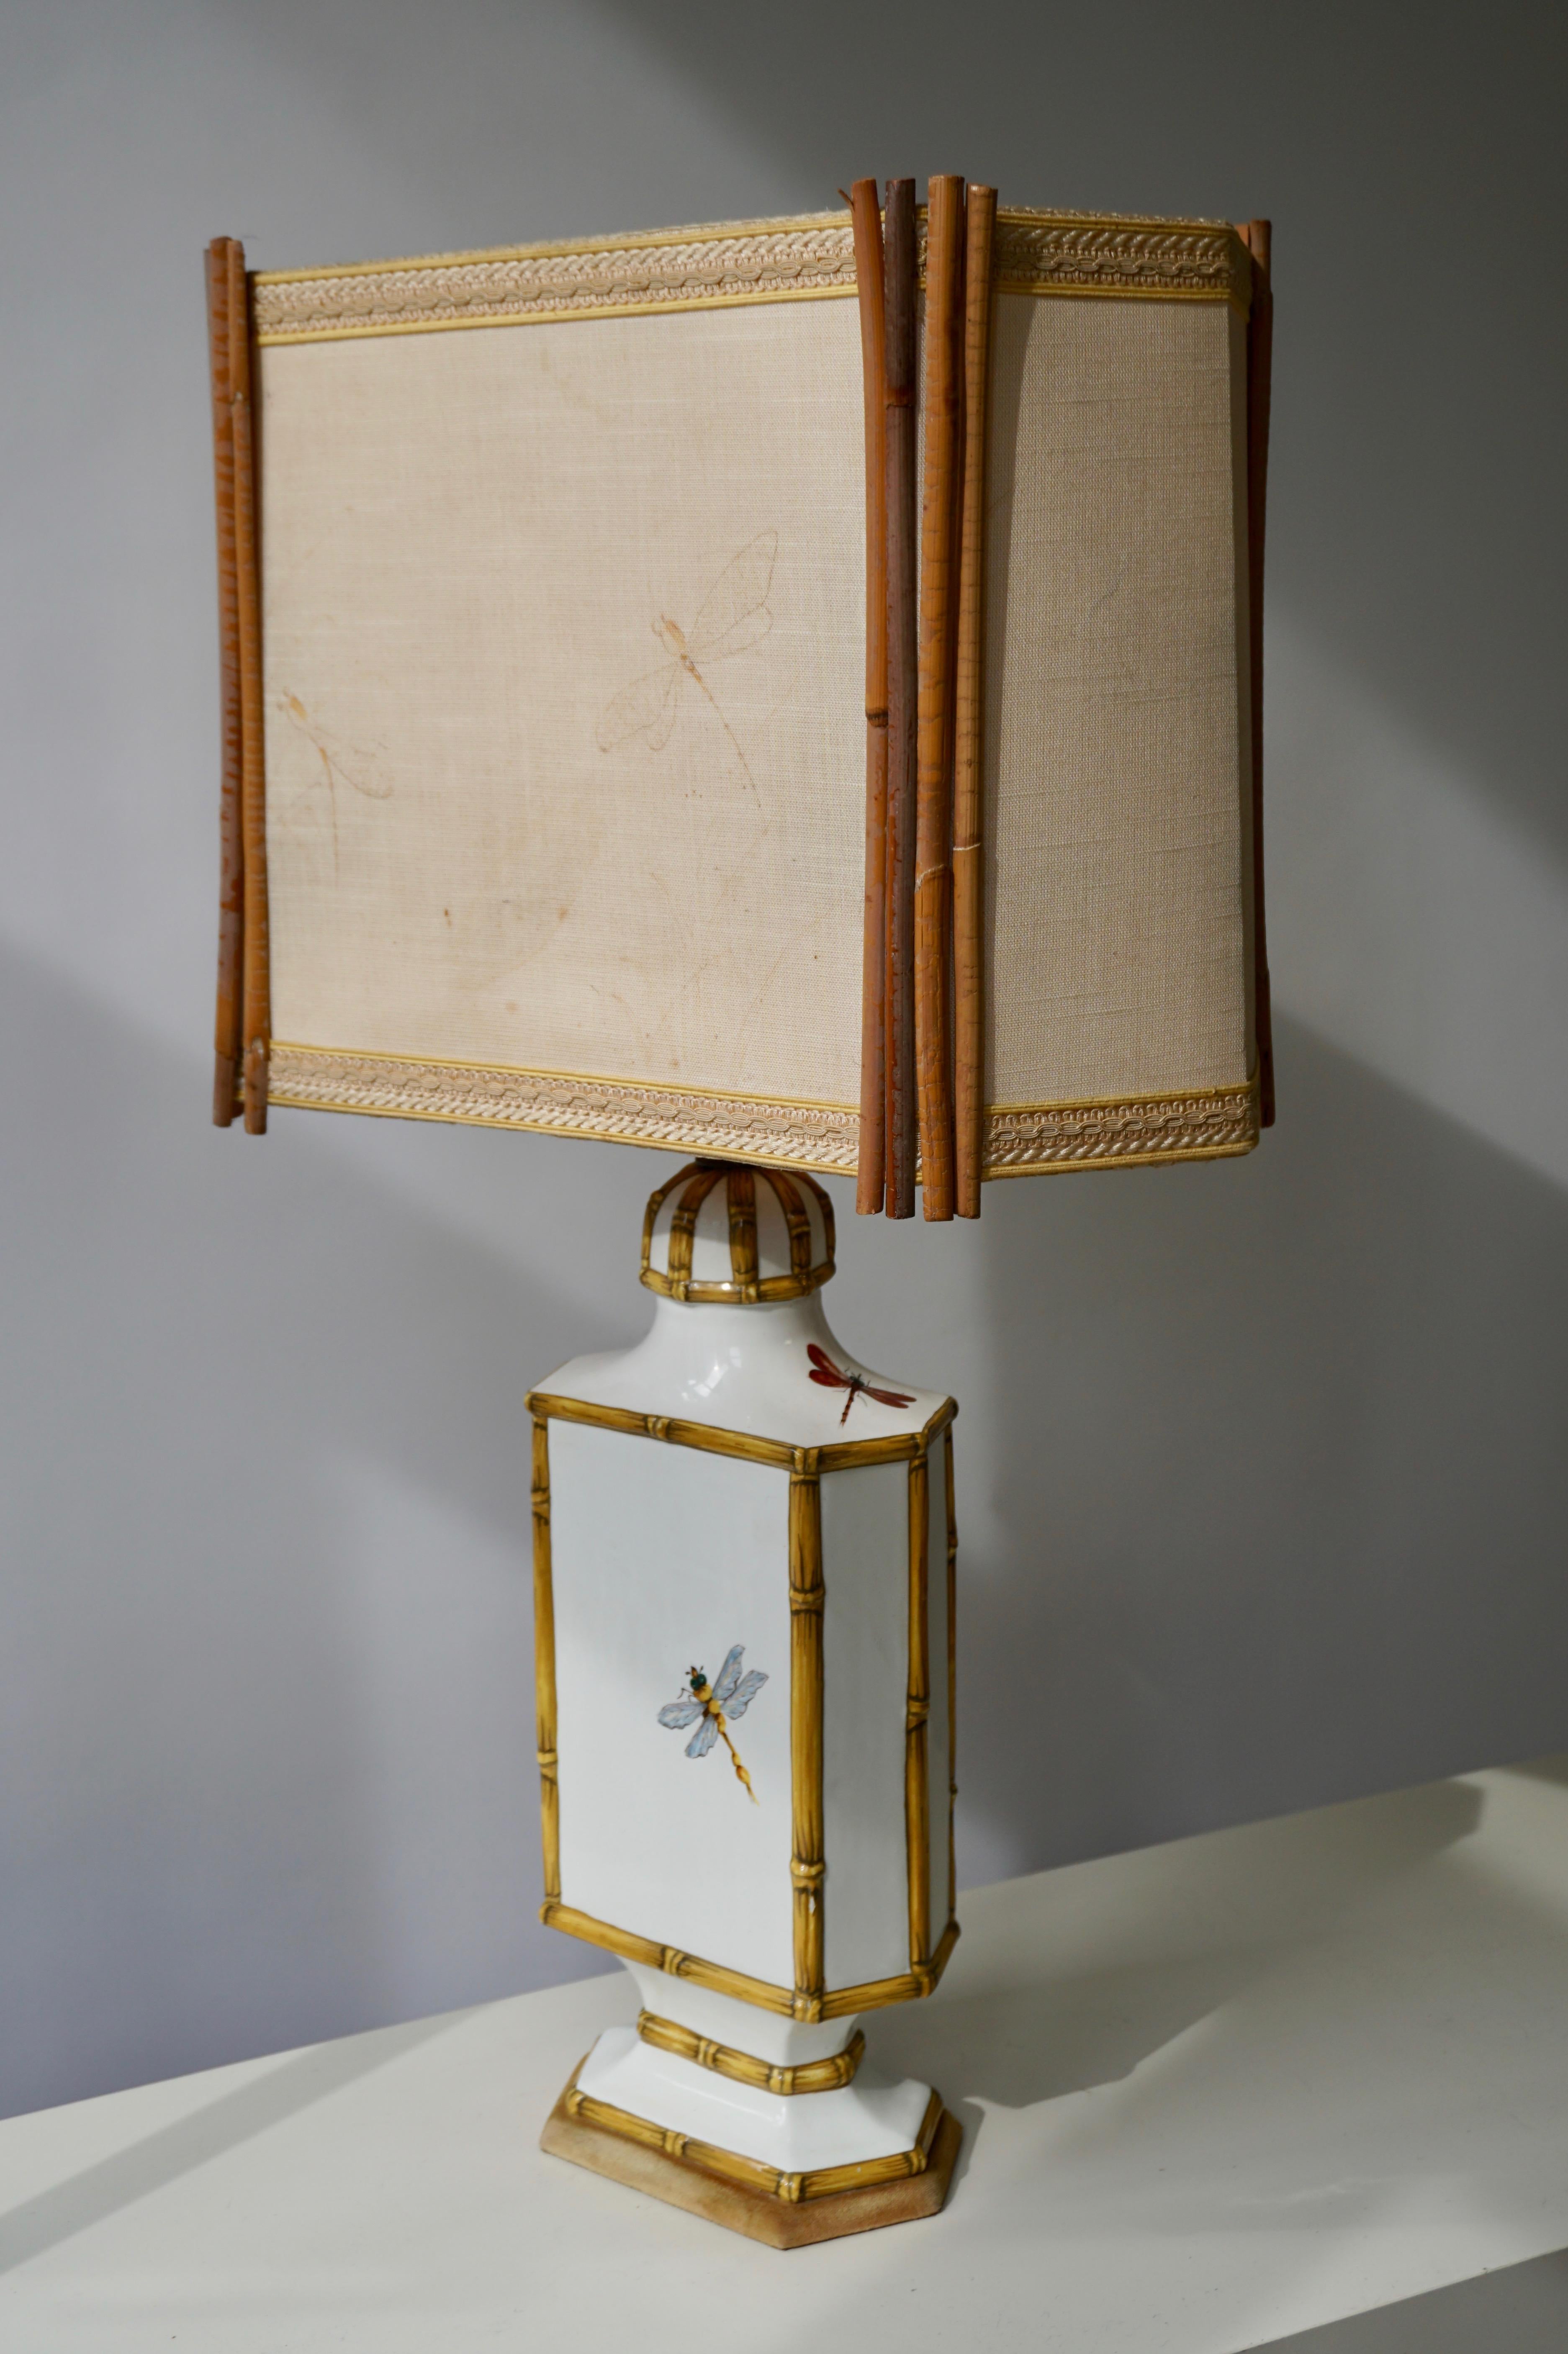 Seltene Jugendstil-Libellen-Tischlampe aus Keramik mit Original-Lampenschirm aus Bambus.
Maße: Höhe 75 cm.
Breite 40 cm.
Tiefe 23 cm.
Gewicht 3 kg.